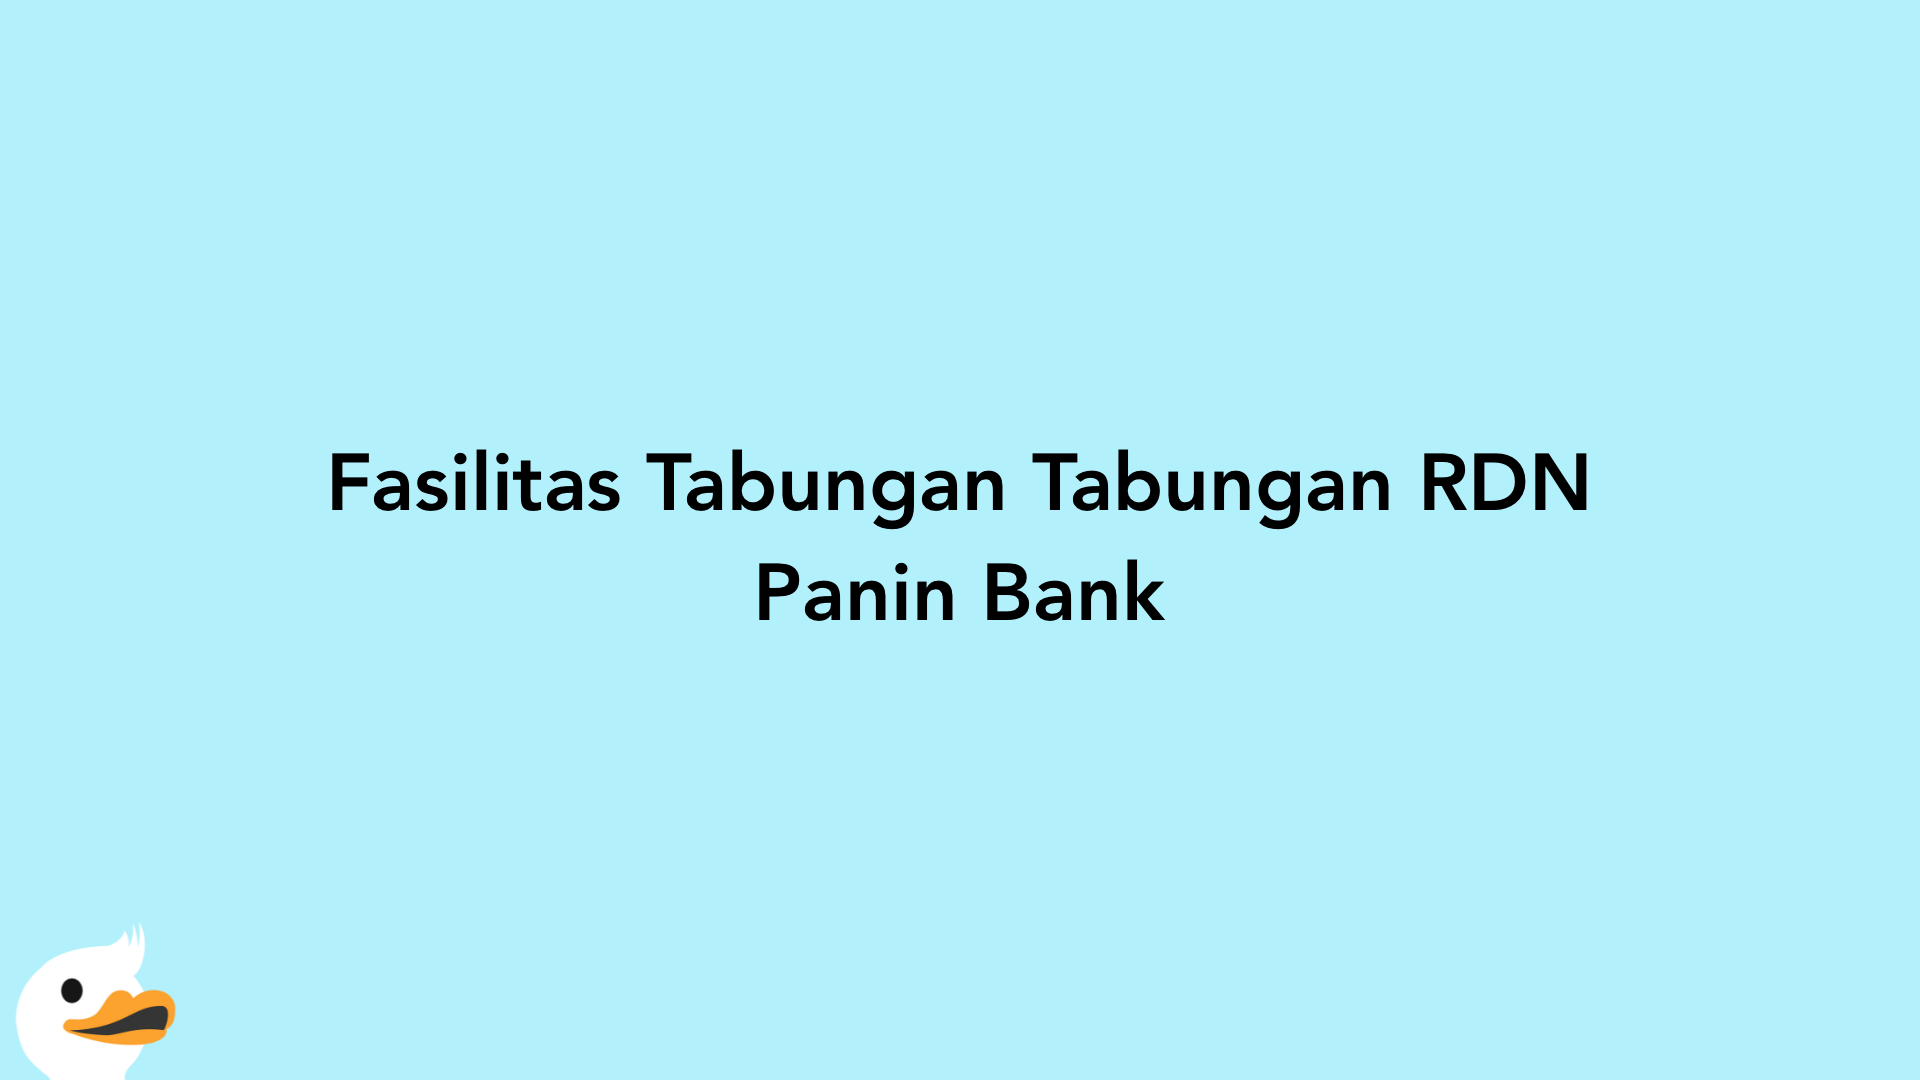 Fasilitas Tabungan Tabungan RDN Panin Bank